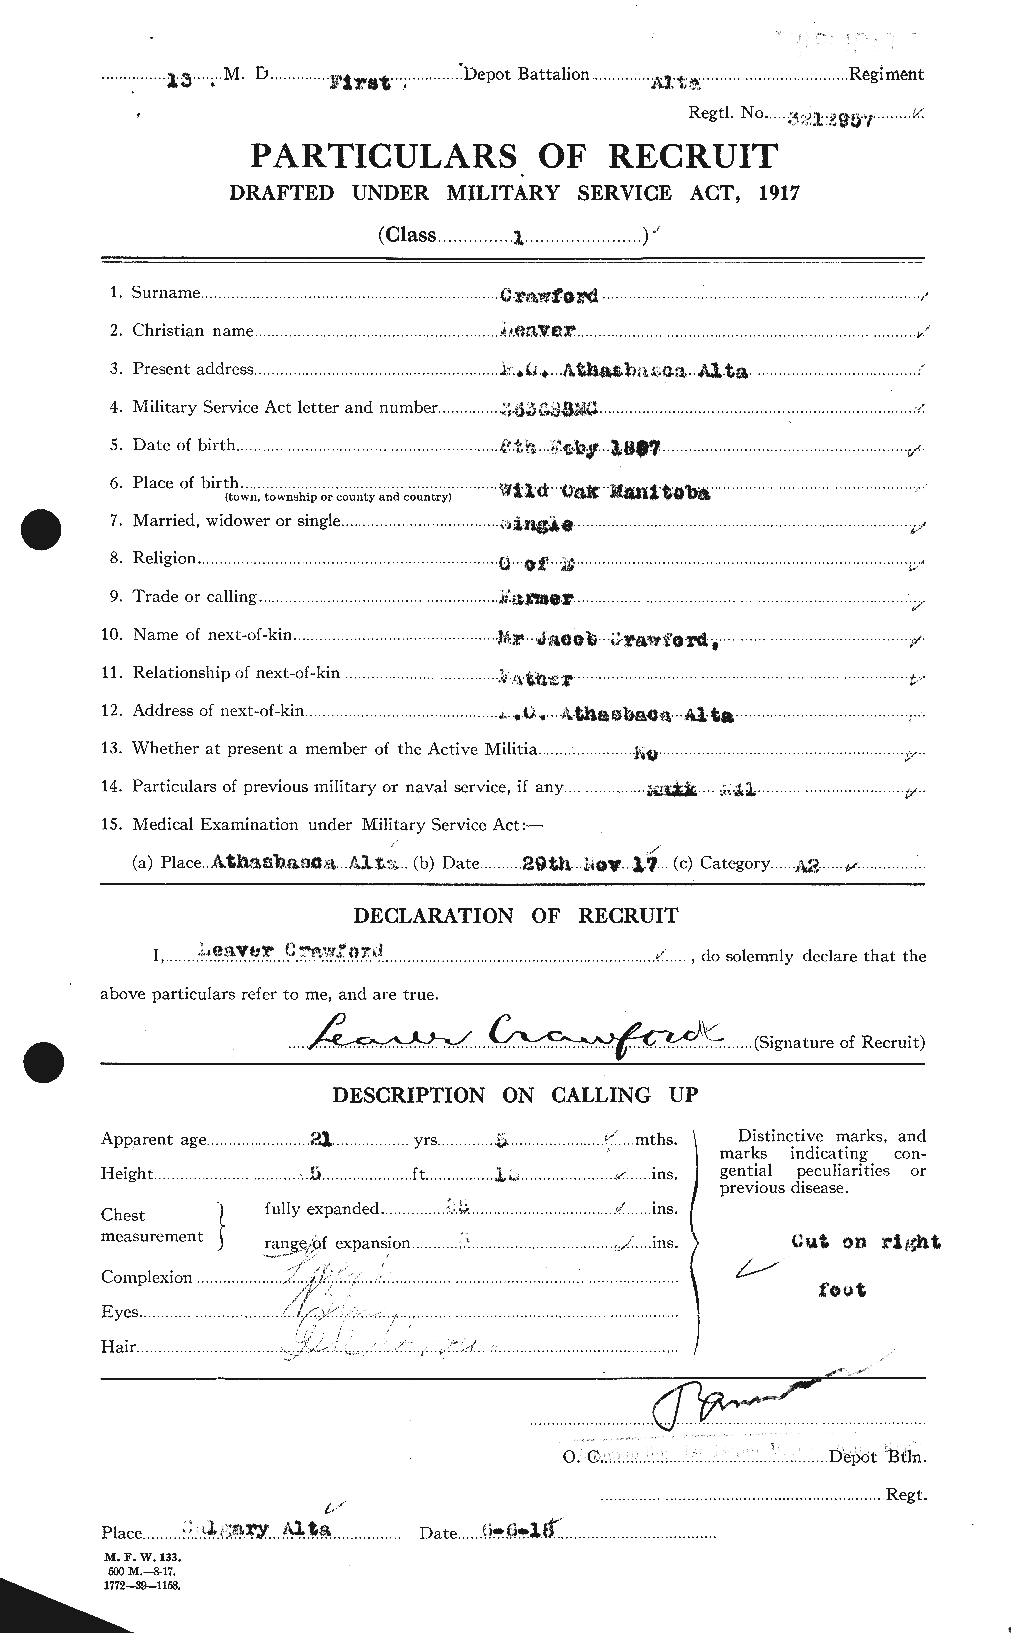 Dossiers du Personnel de la Première Guerre mondiale - CEC 061801a